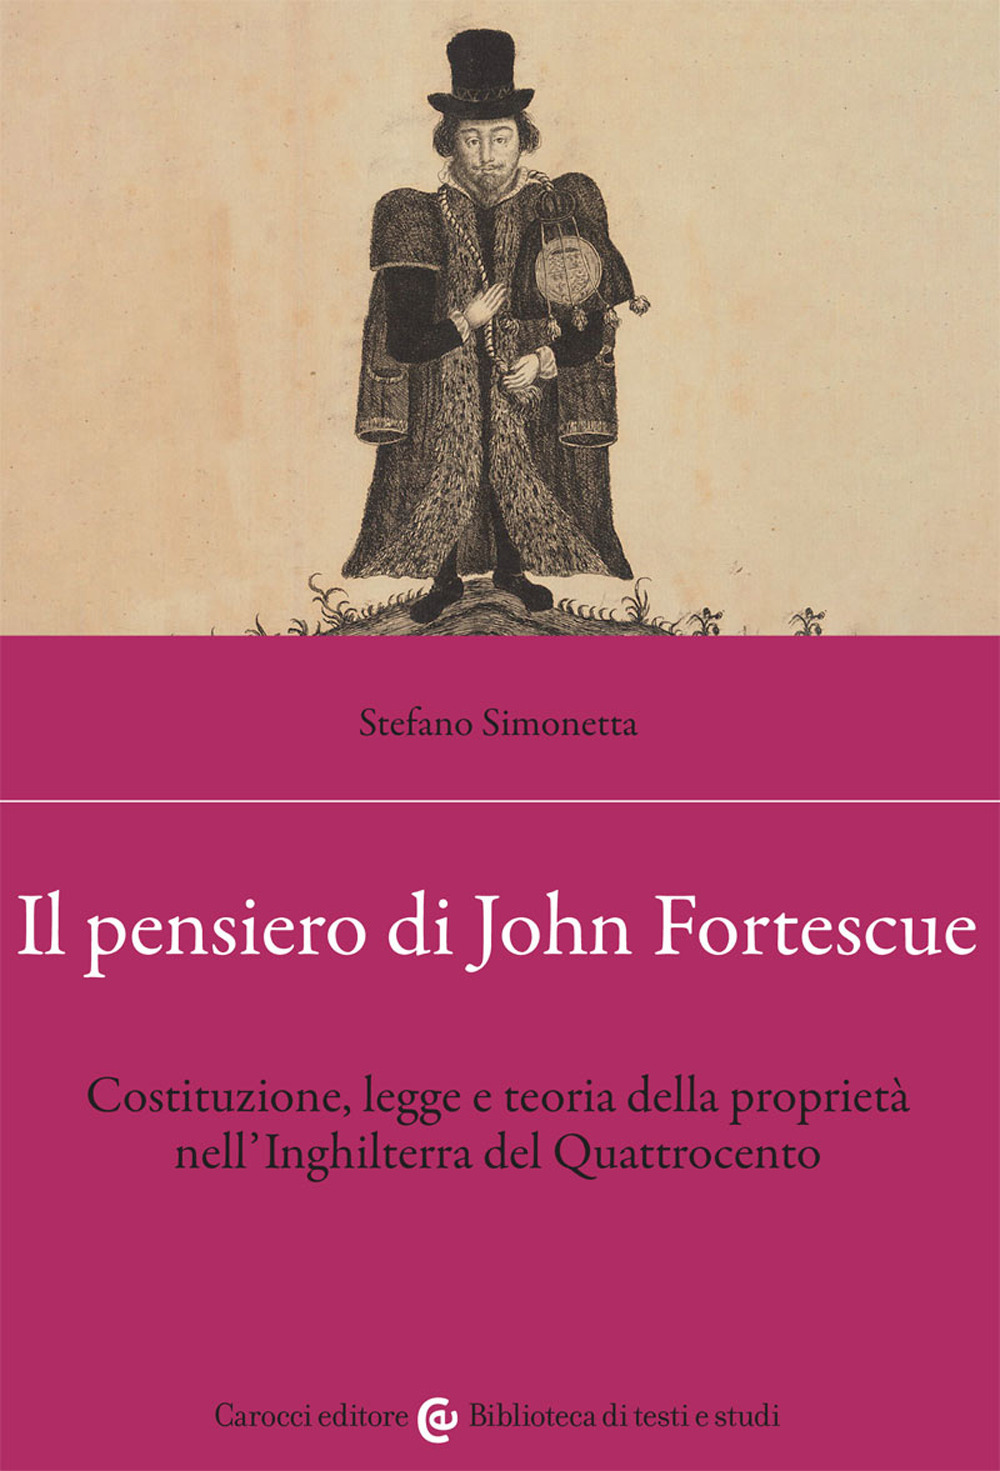 Il pensiero di John Fortescue. Costituzione, legge e teoria della proprietà nell'Inghilterra del Quattrocento